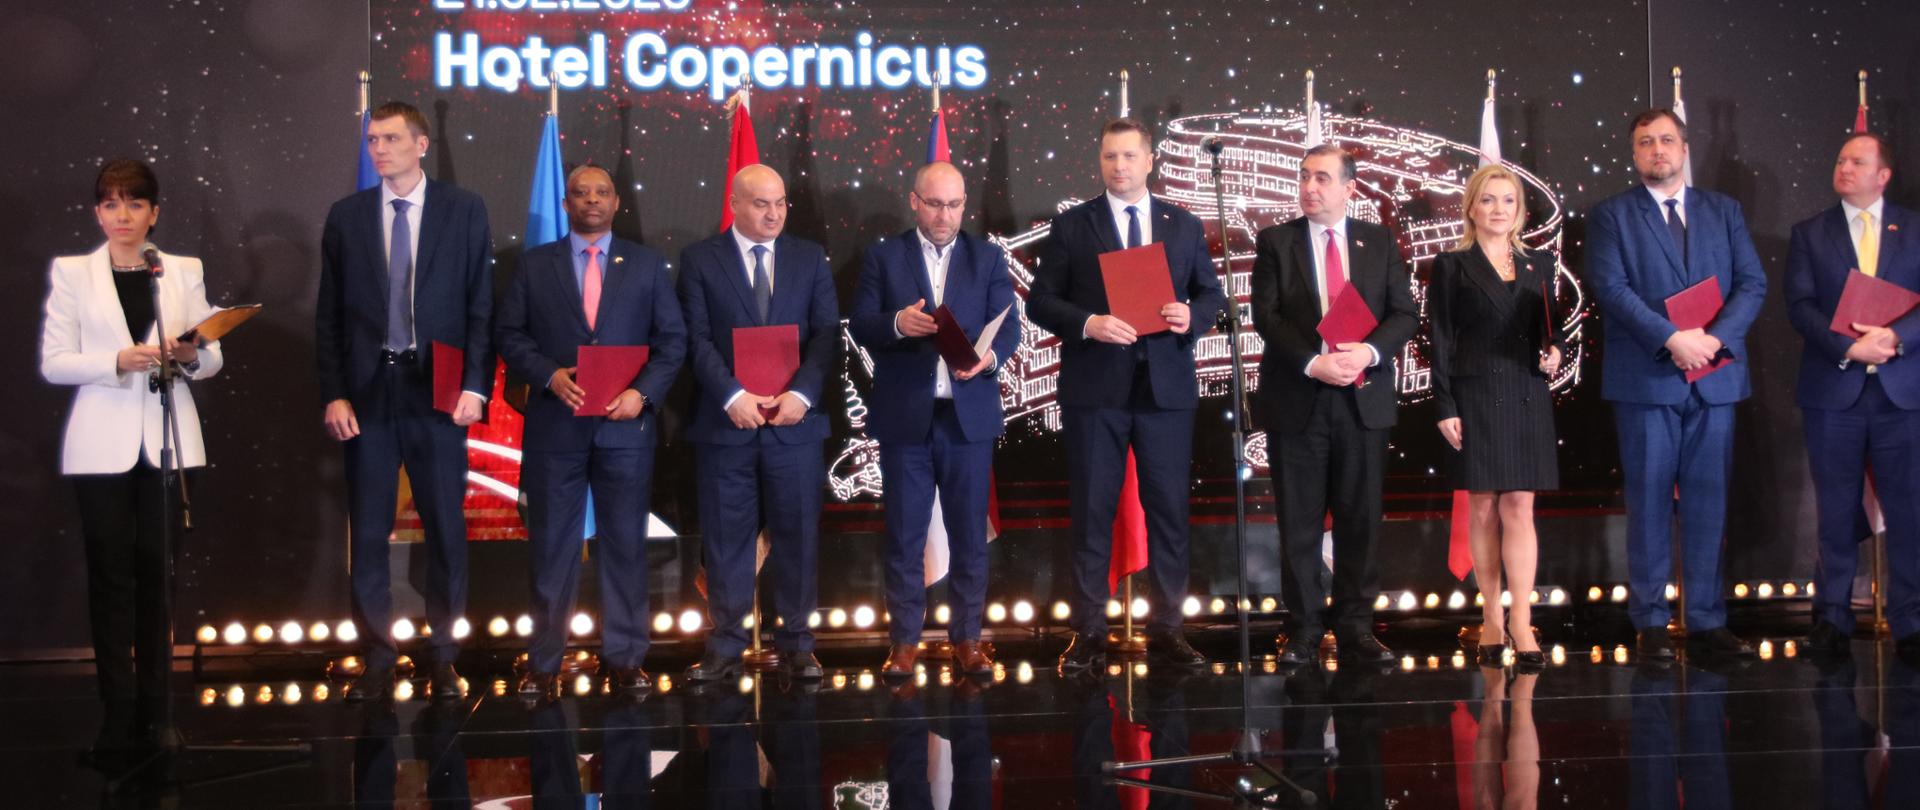 Kilka trzymających czerwone teczki osób stoi na błyszczącej podłodze, za nimi na ścianie napis 21.02.2023 Hotel Copernicus, z boku stoi ubrana na biało kobieta i mówi do mikrofonu na stojaku.